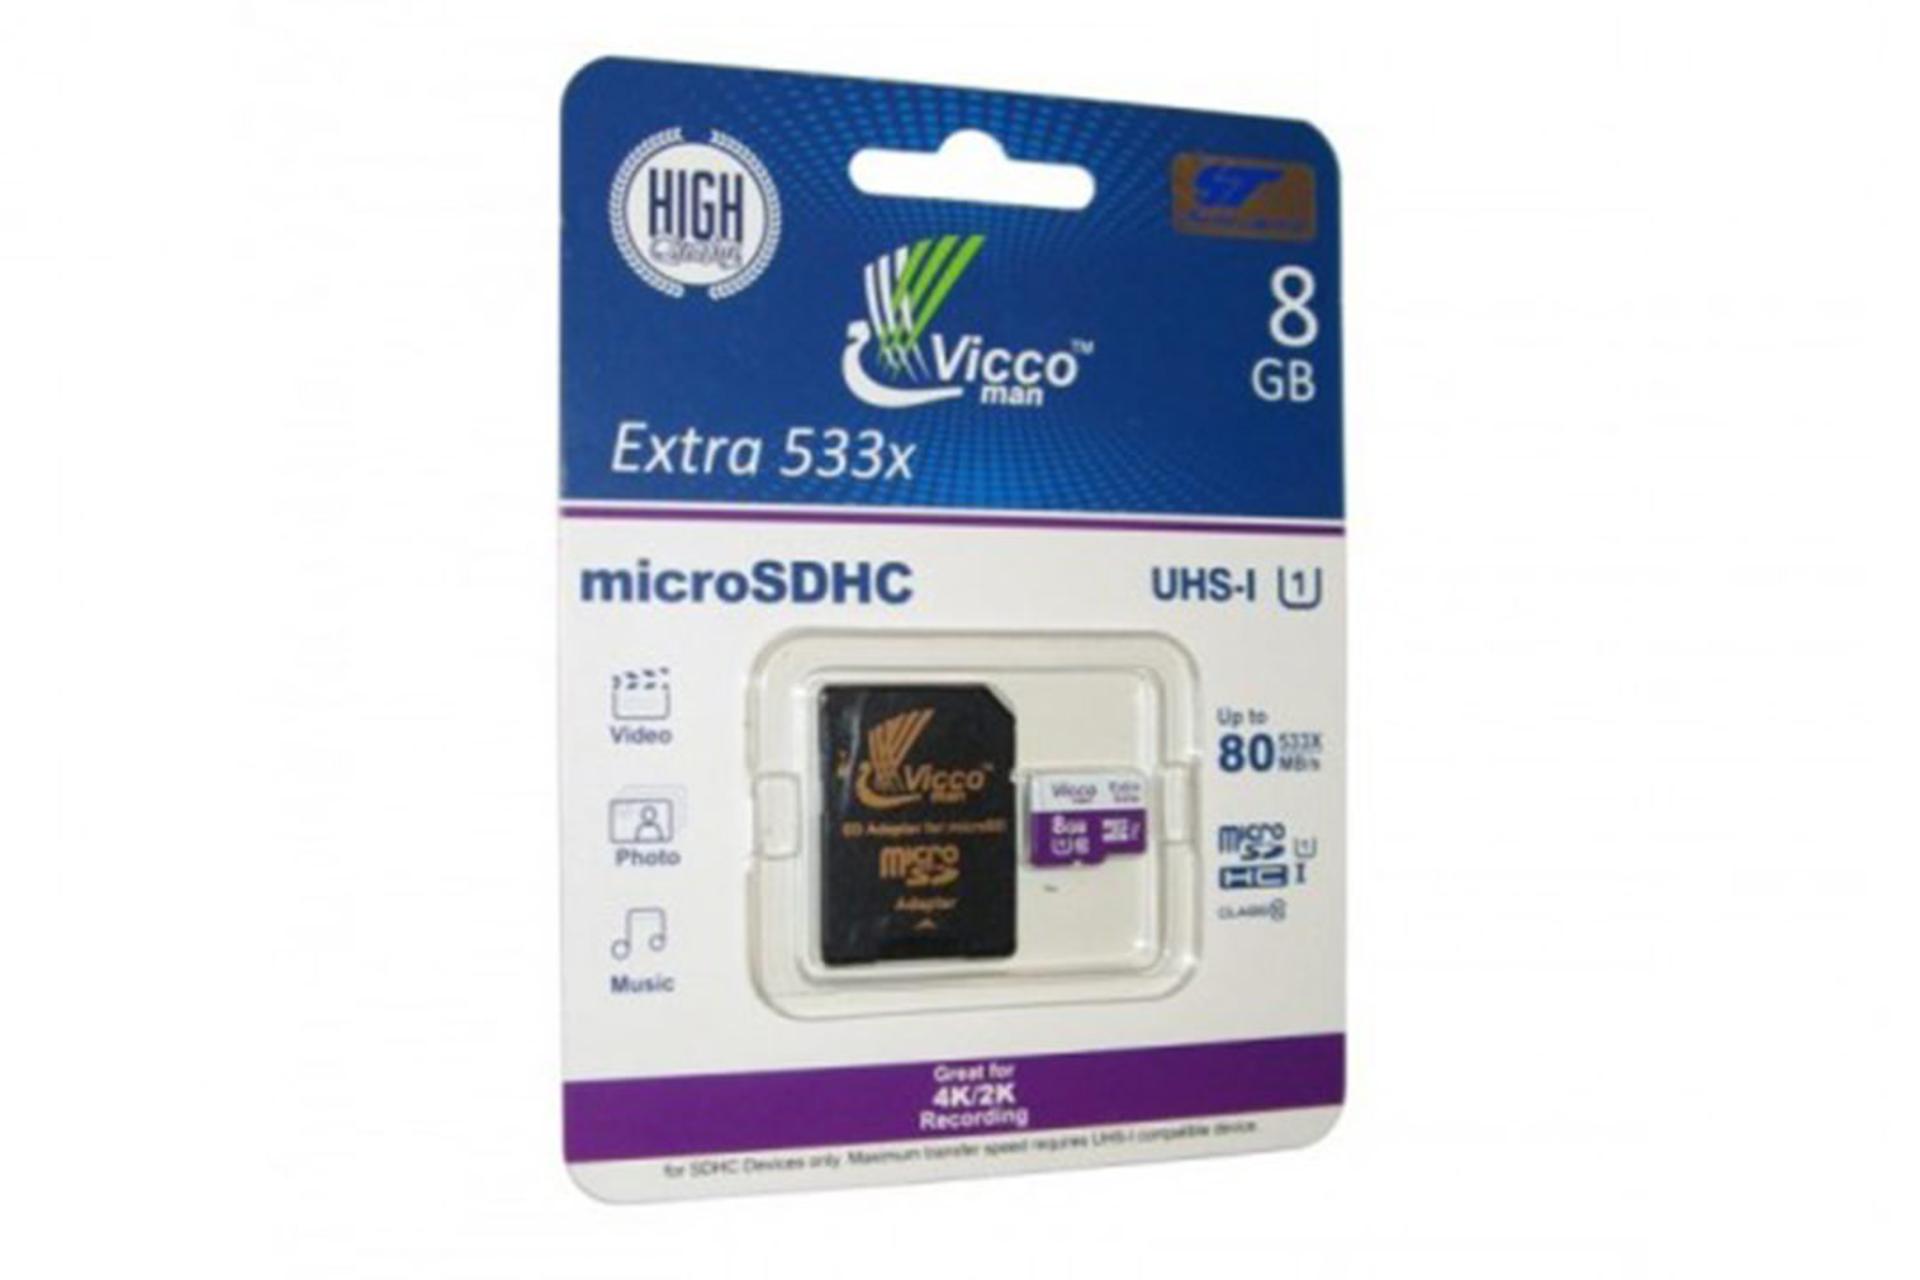 مرجع متخصصين ايران Viccoman Extra 533X microSDHC Class 10 UHS-I U1 8GB